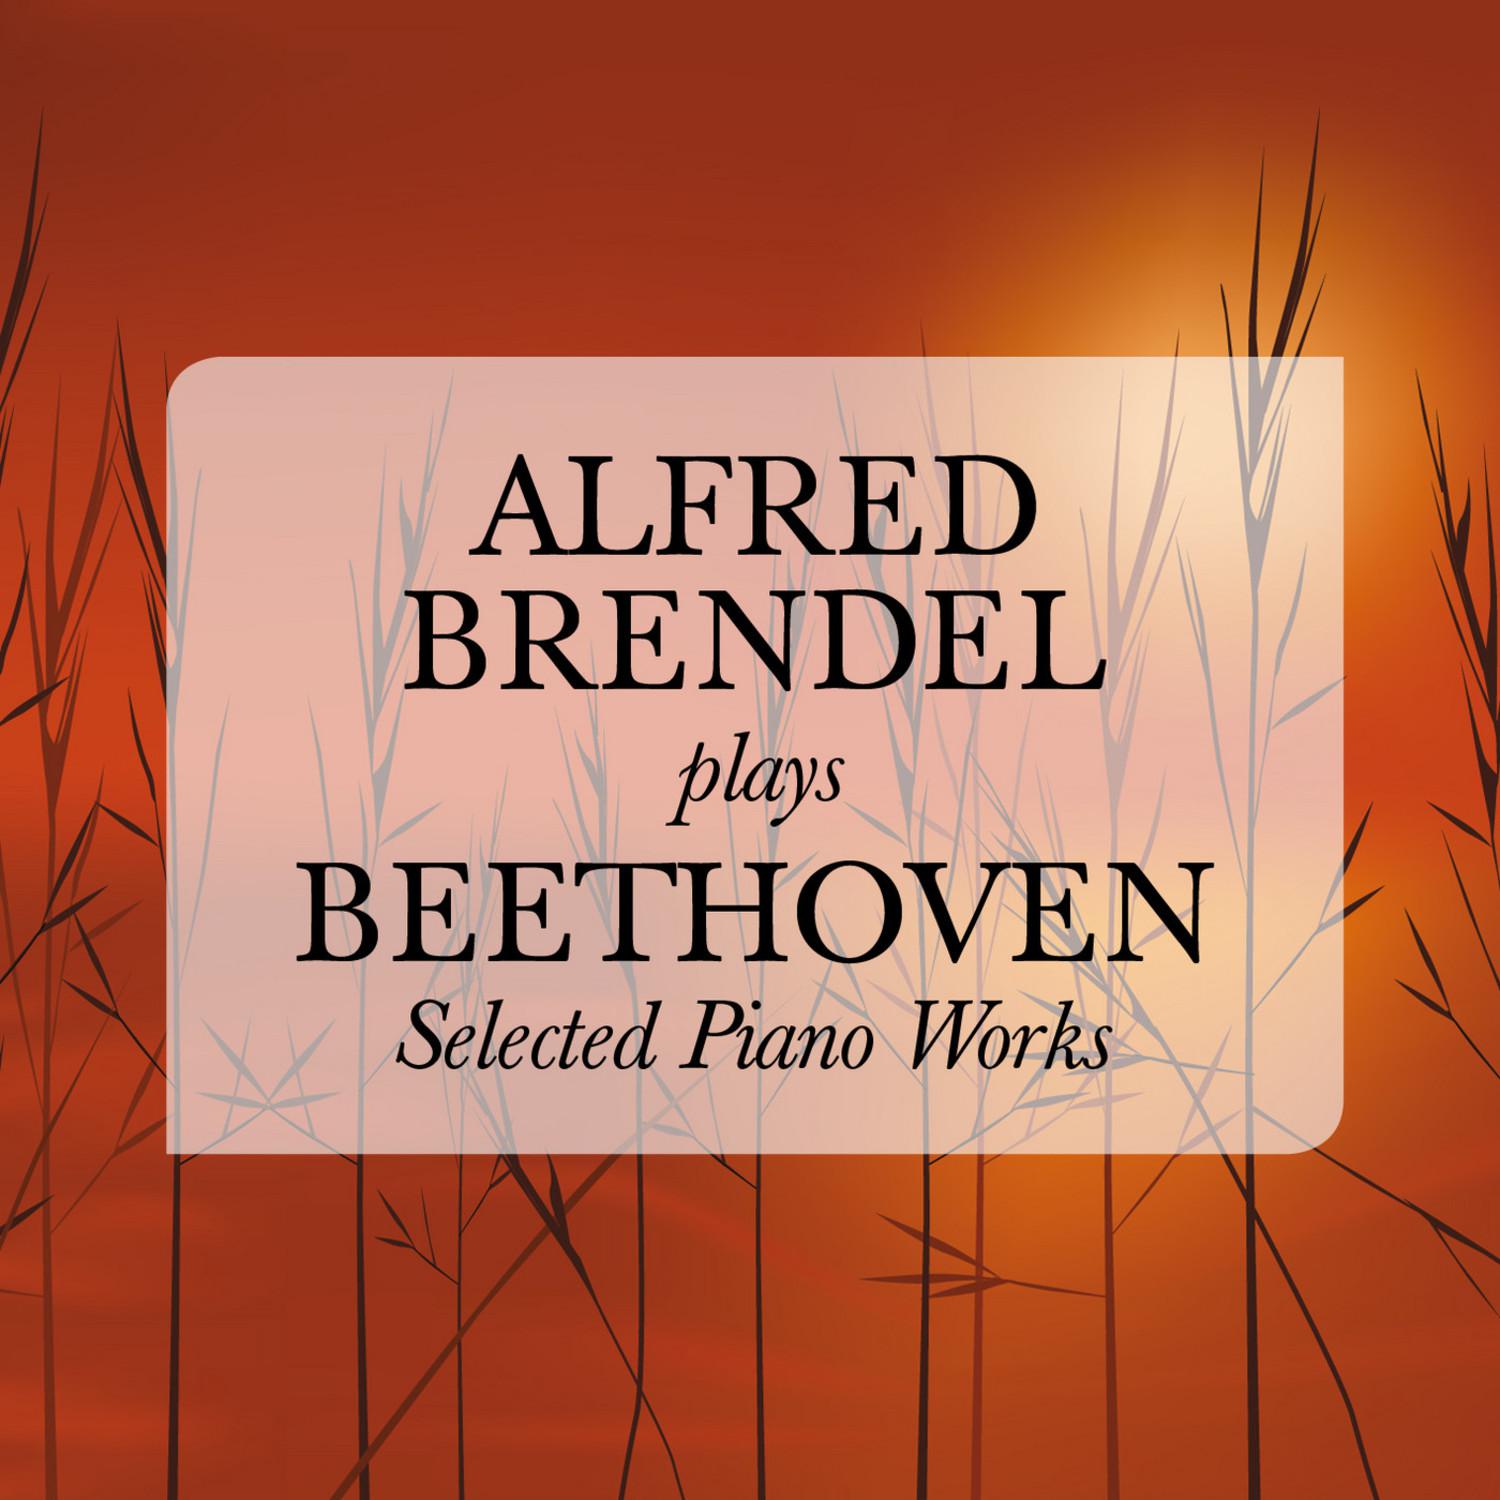 Concerto No. 2 in B-Flat Major for Piano and Orchestra, Op. 19: I. Allegro con brio